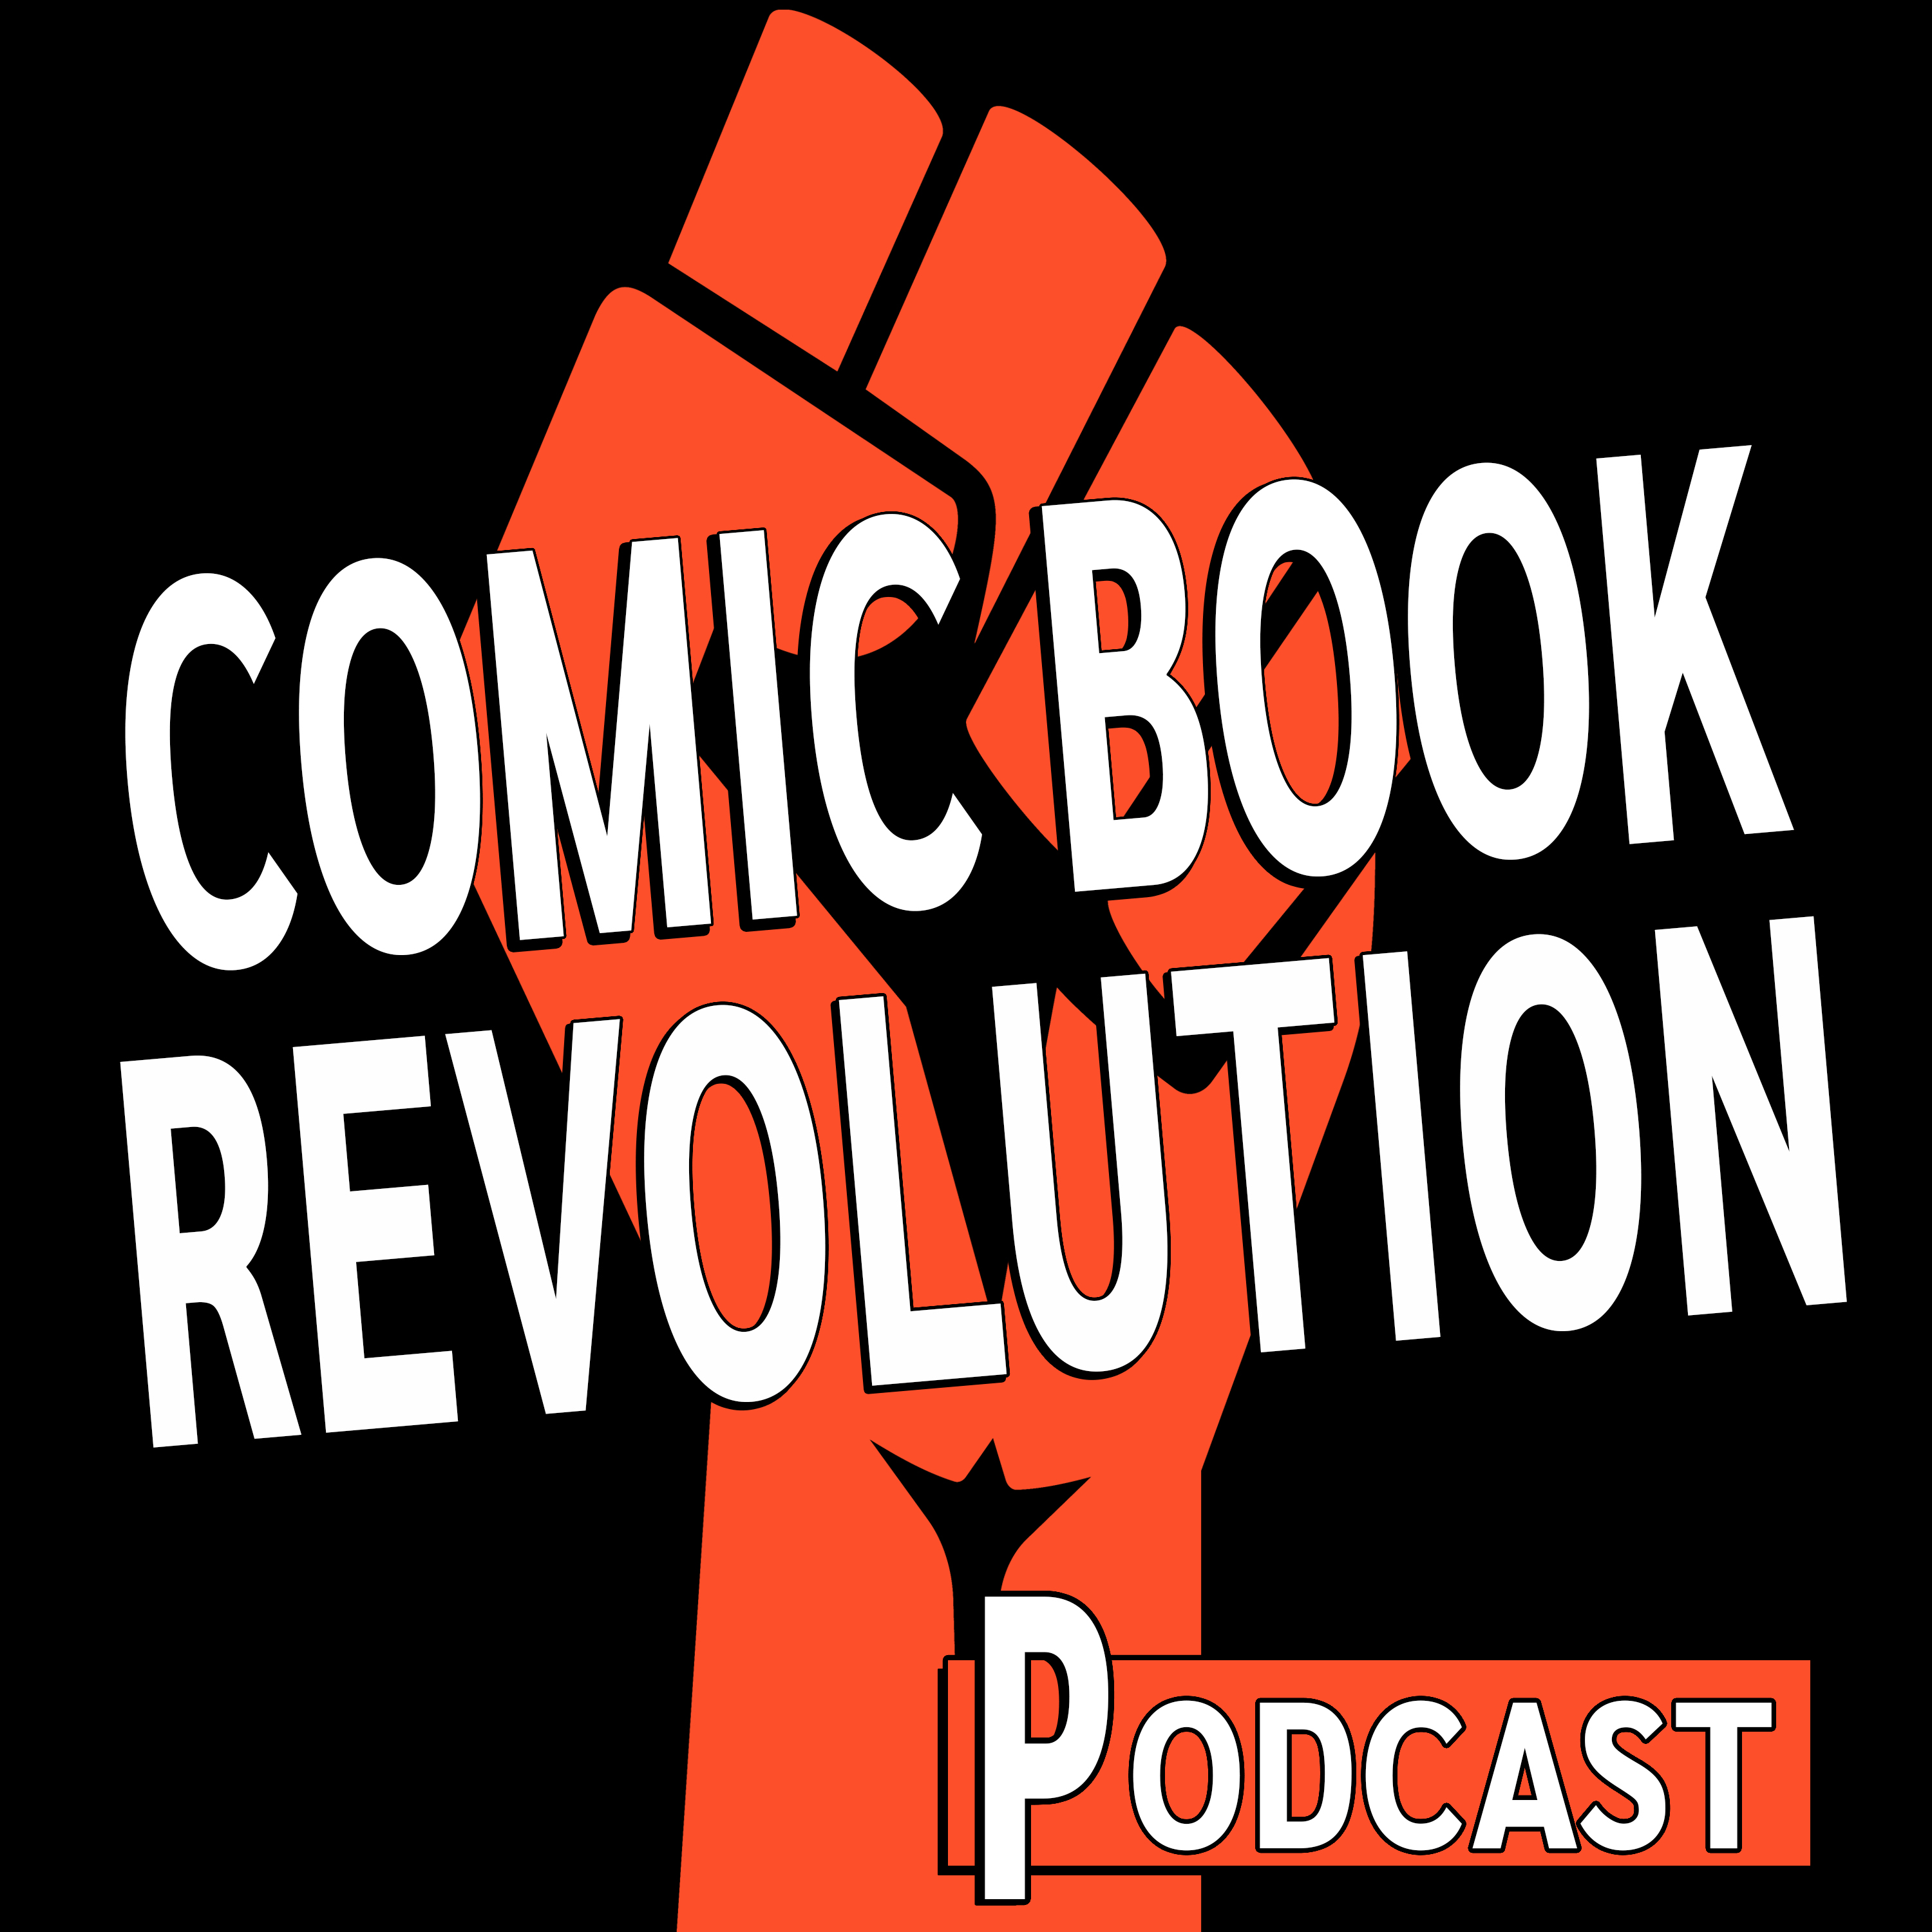 Comic Book Revolution Podcast Episode 41